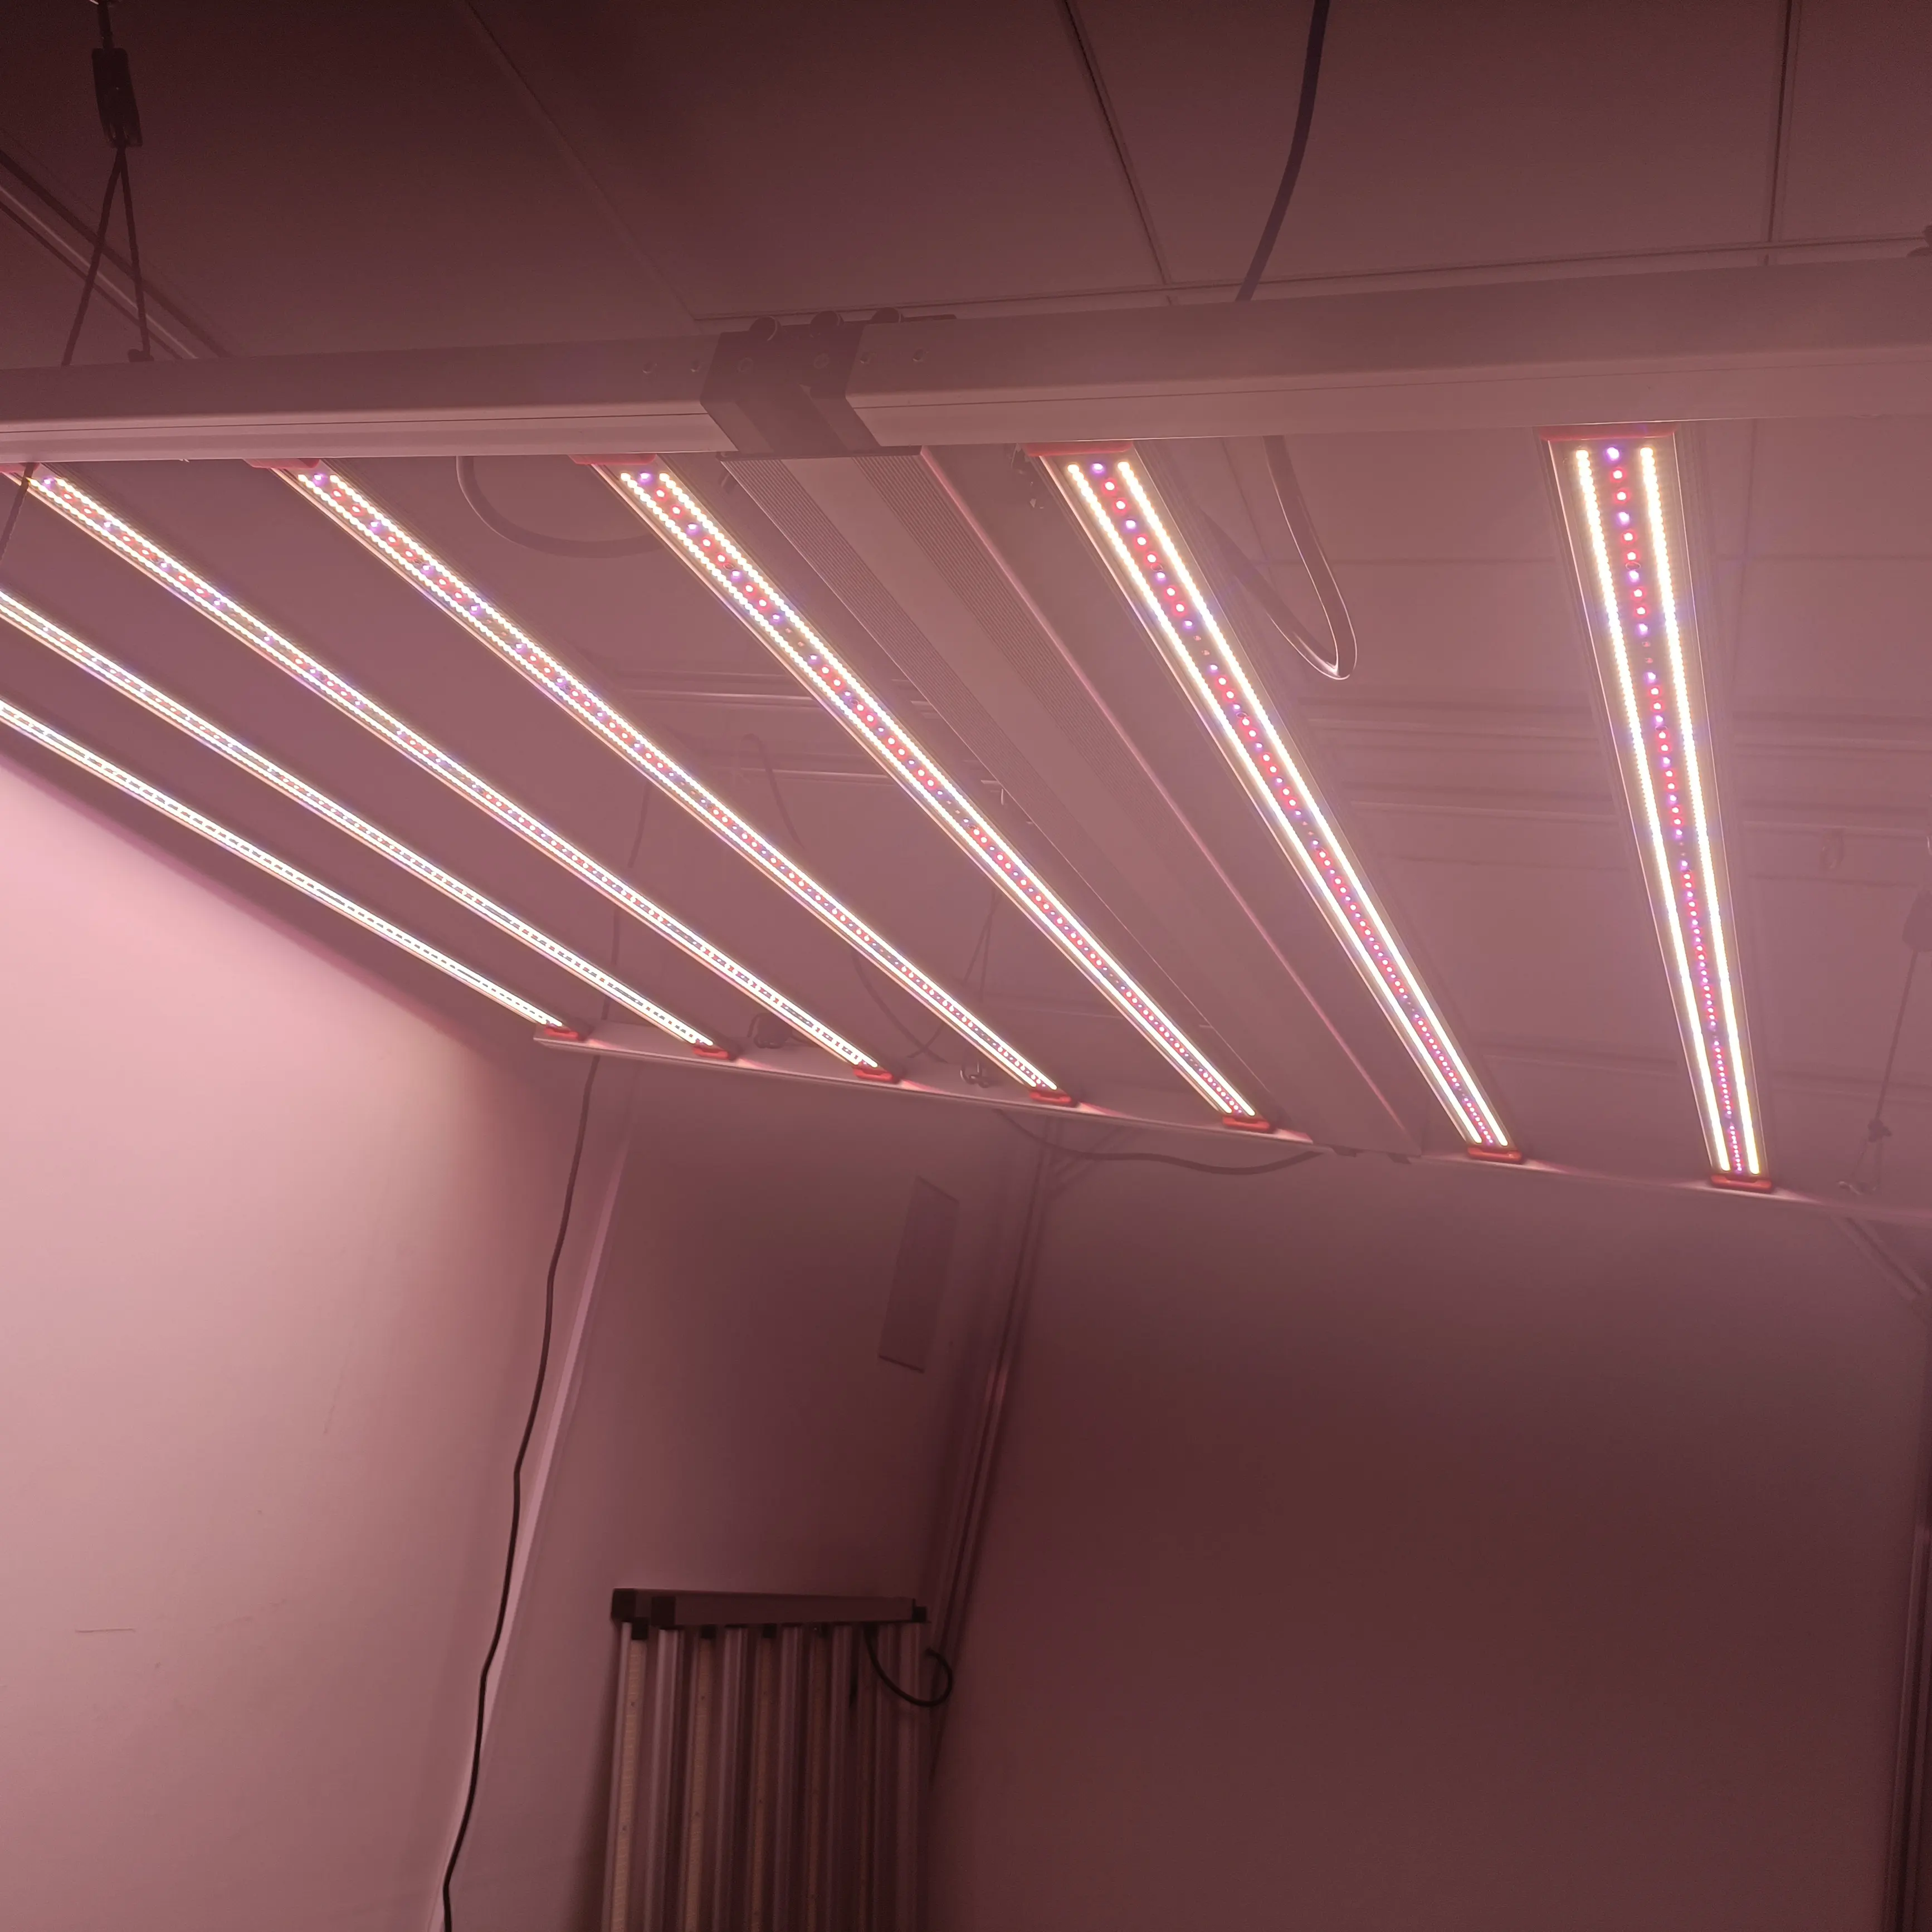 BAV AGREEN Neueste 1000W kommerzielle LED Grow Light Bar UV IR Drei Kanäle Dimmen Zimmer pflanzen Lampe für 4 X4 4 X6FT Wachstums zelt